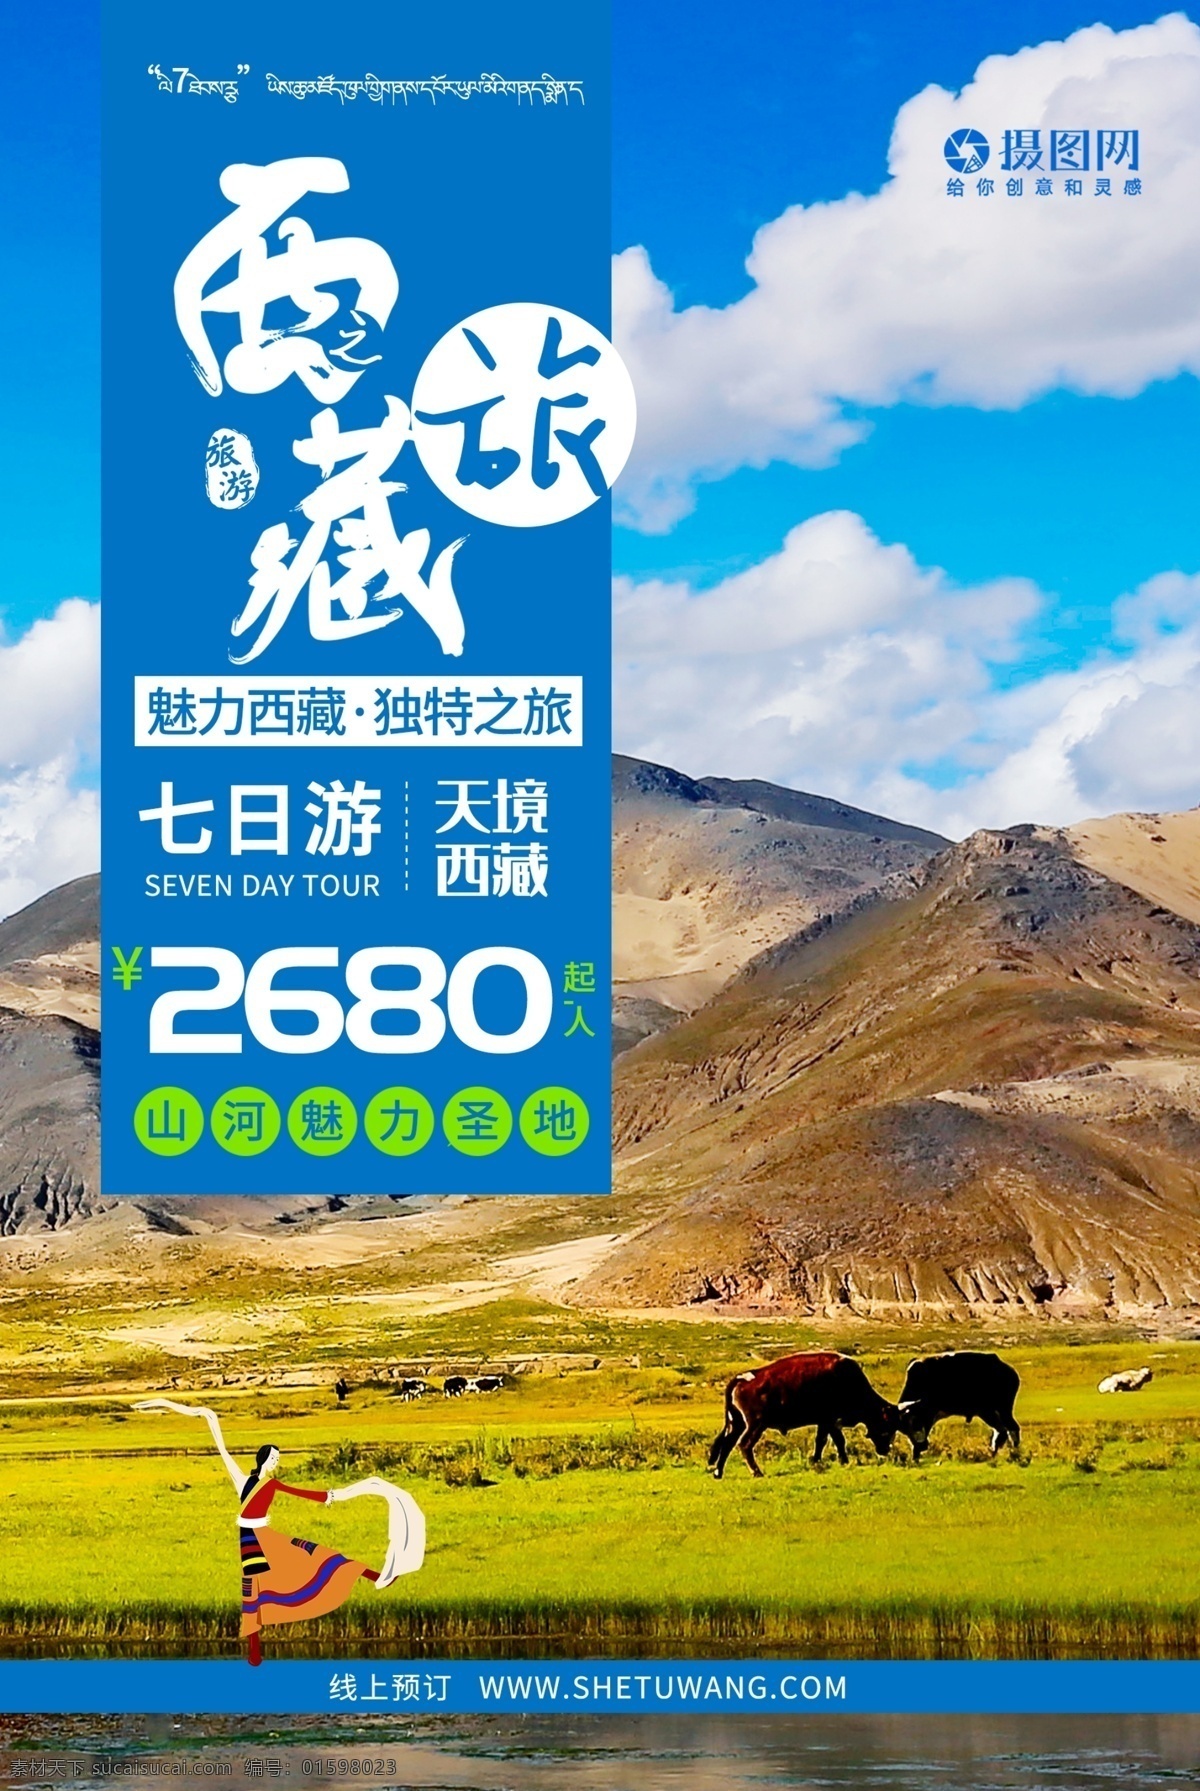 大 美西 藏 风光 旅 旅游 海报 大美 西藏 藏族 旅行 天境 魅力 圣地 草原 牦牛 预定 游玩 蓝天 白云 旅游海报 西藏旅游